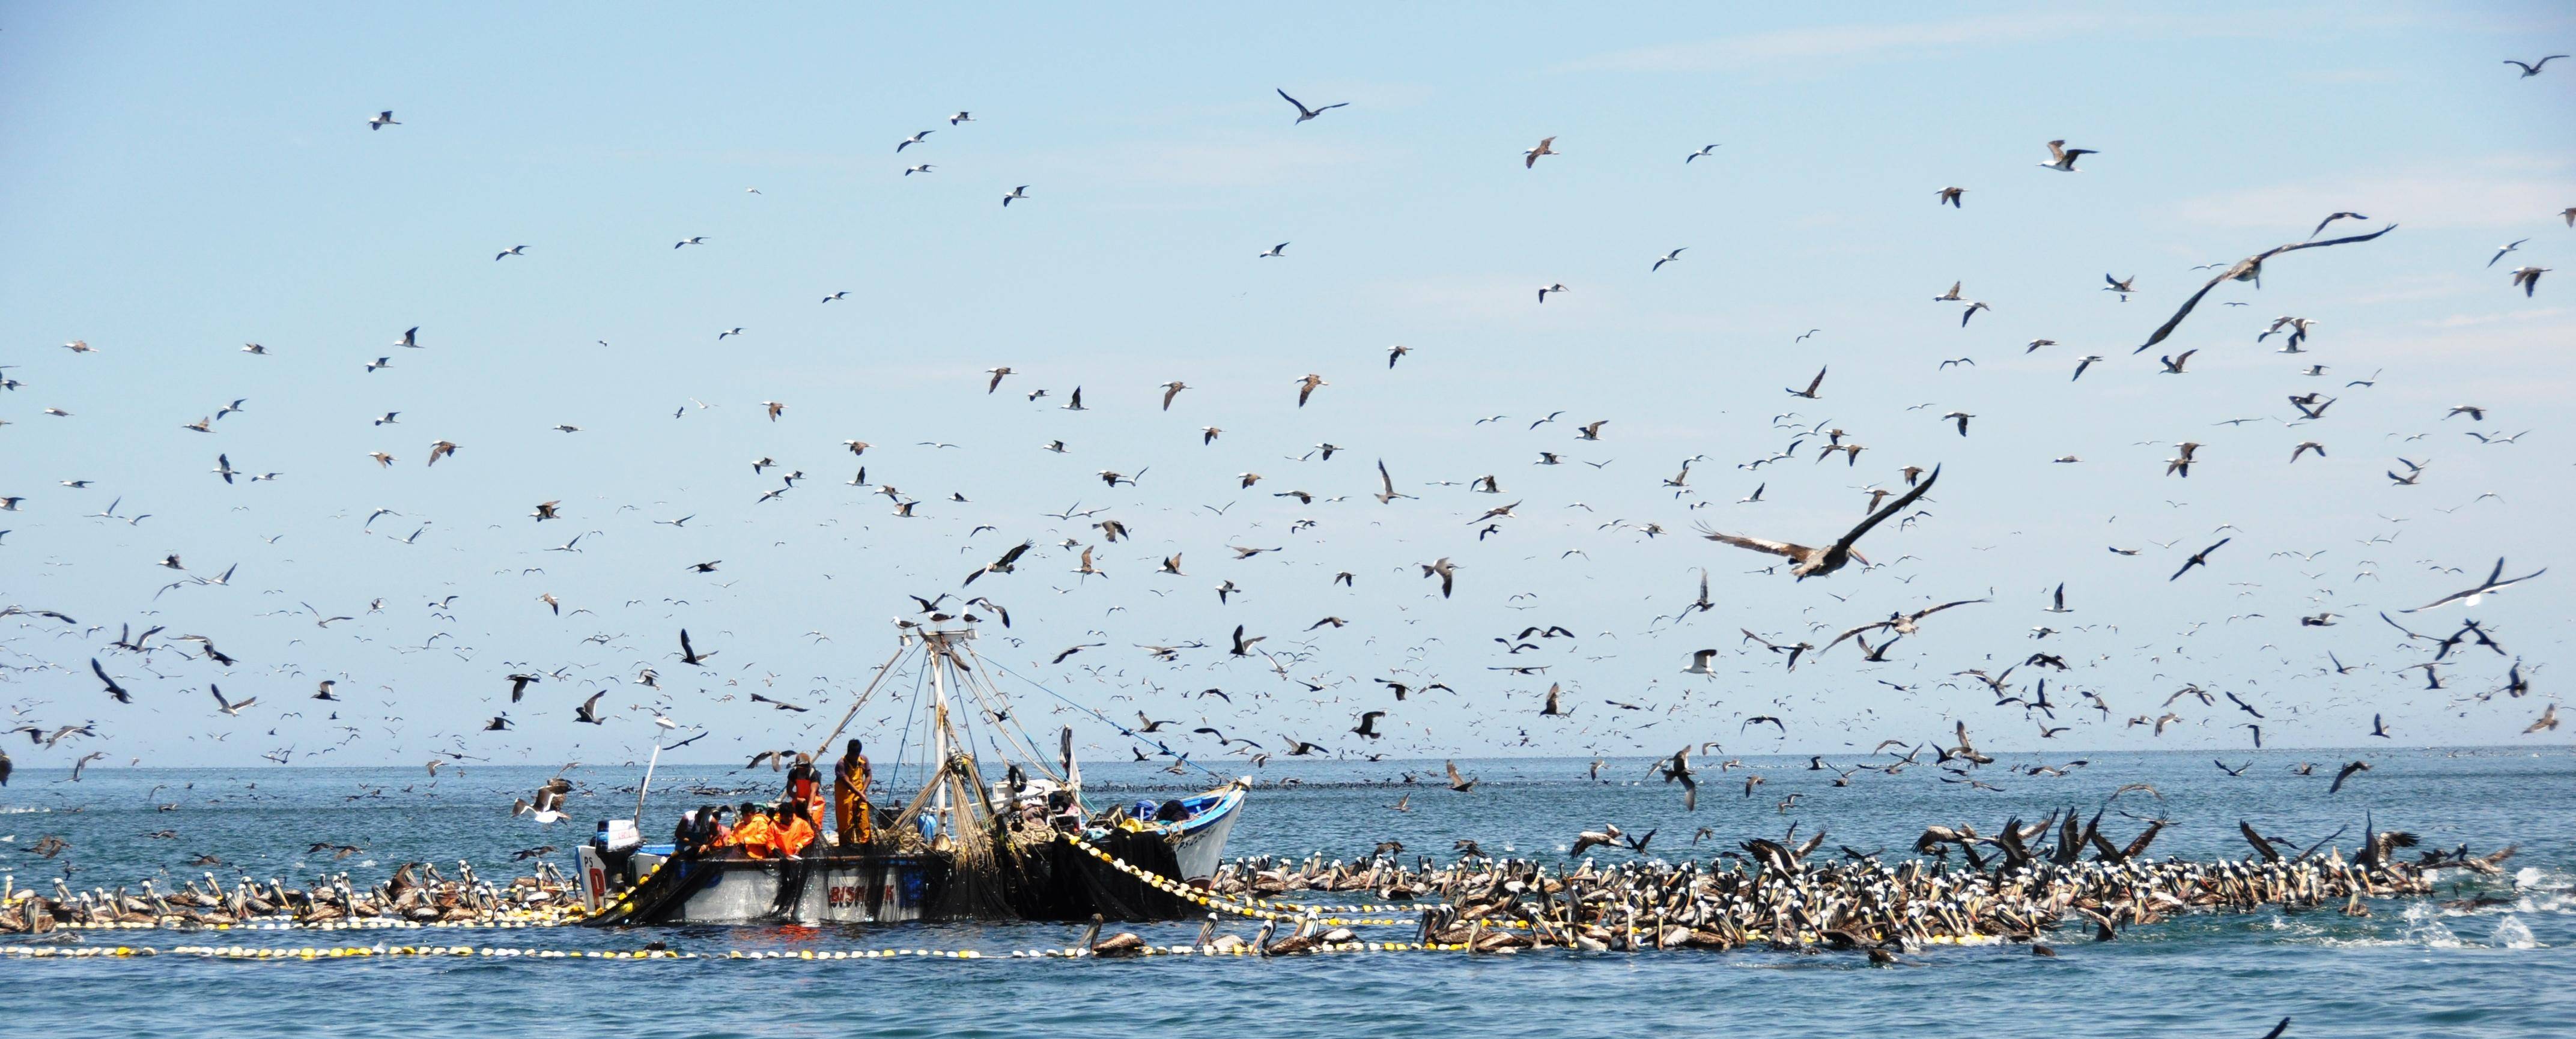 秘鲁渔场上升流图片